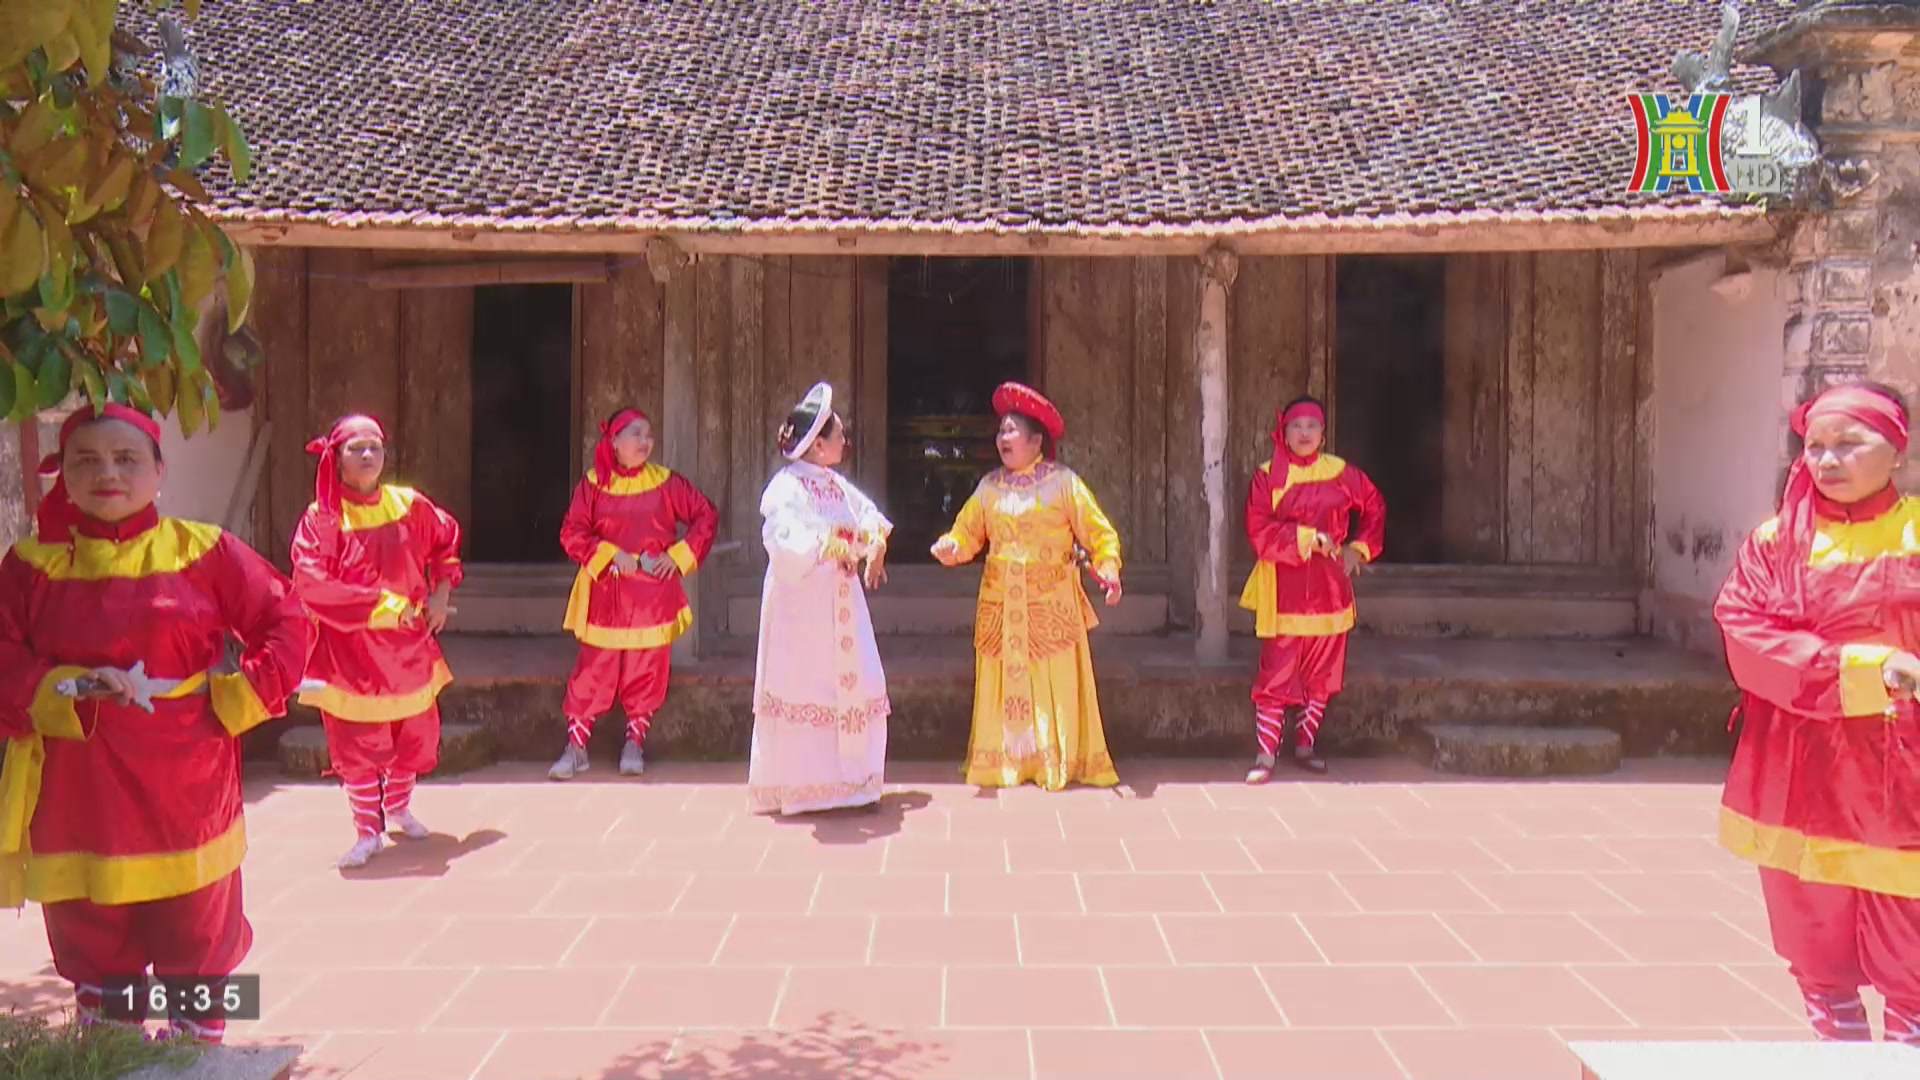 Đồng Quang – giàu truyền thống, đẹp hiện tại